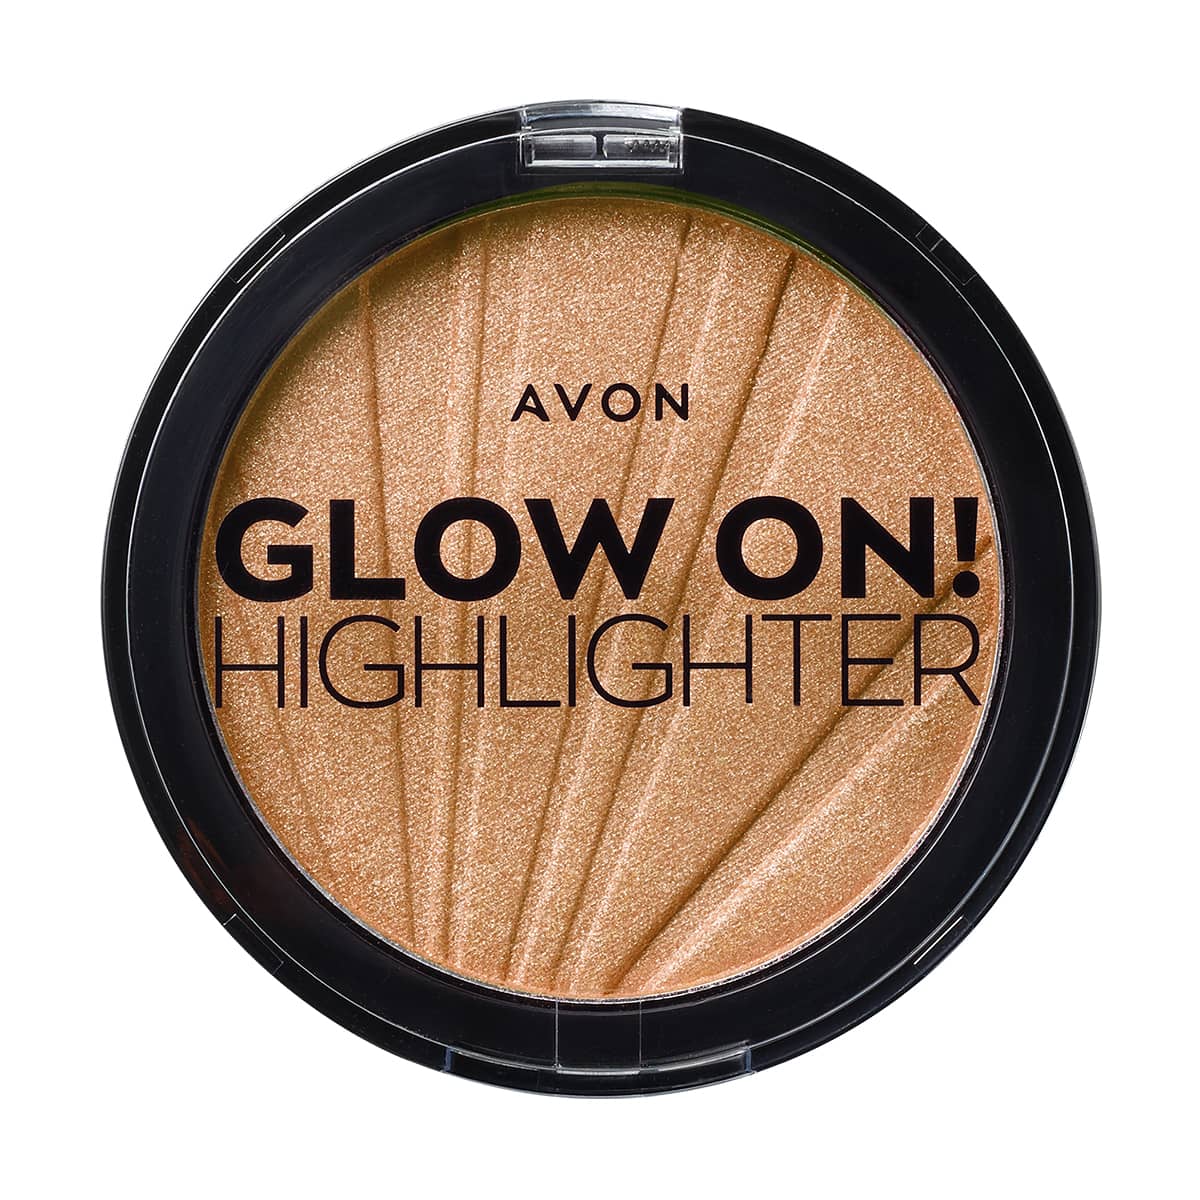 Avon Glow On Işıltılı Aydınlatıcı Golden Glow 1475348 12.5gr